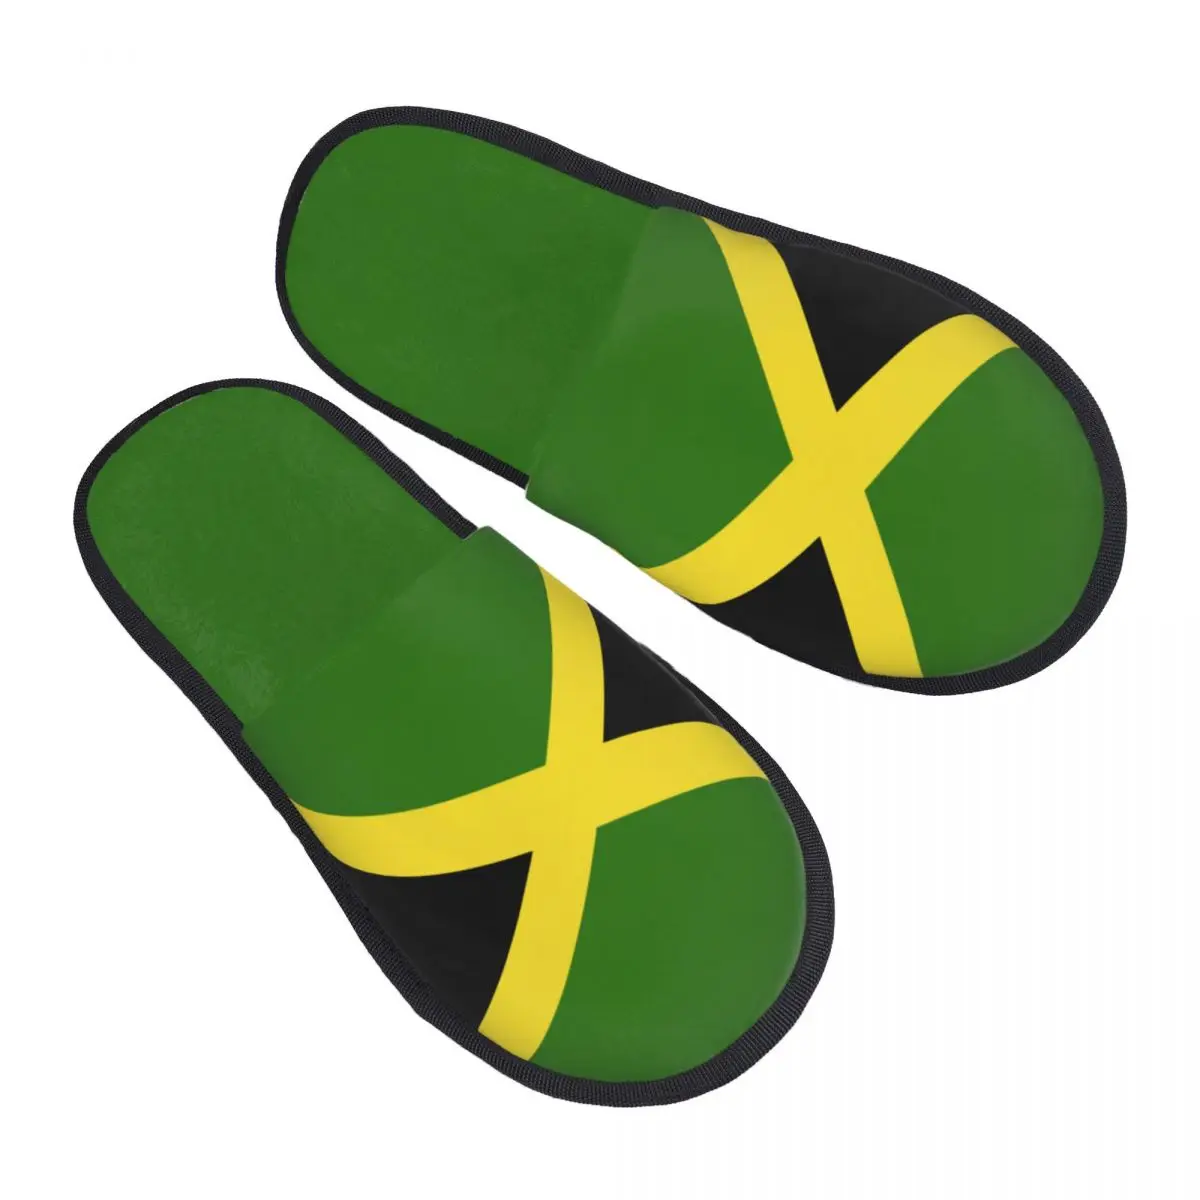 

Меховые тапочки для женщин и мужчин, модные пушистые зимние теплые тапочки с флагом Ямайки, домашняя обувь